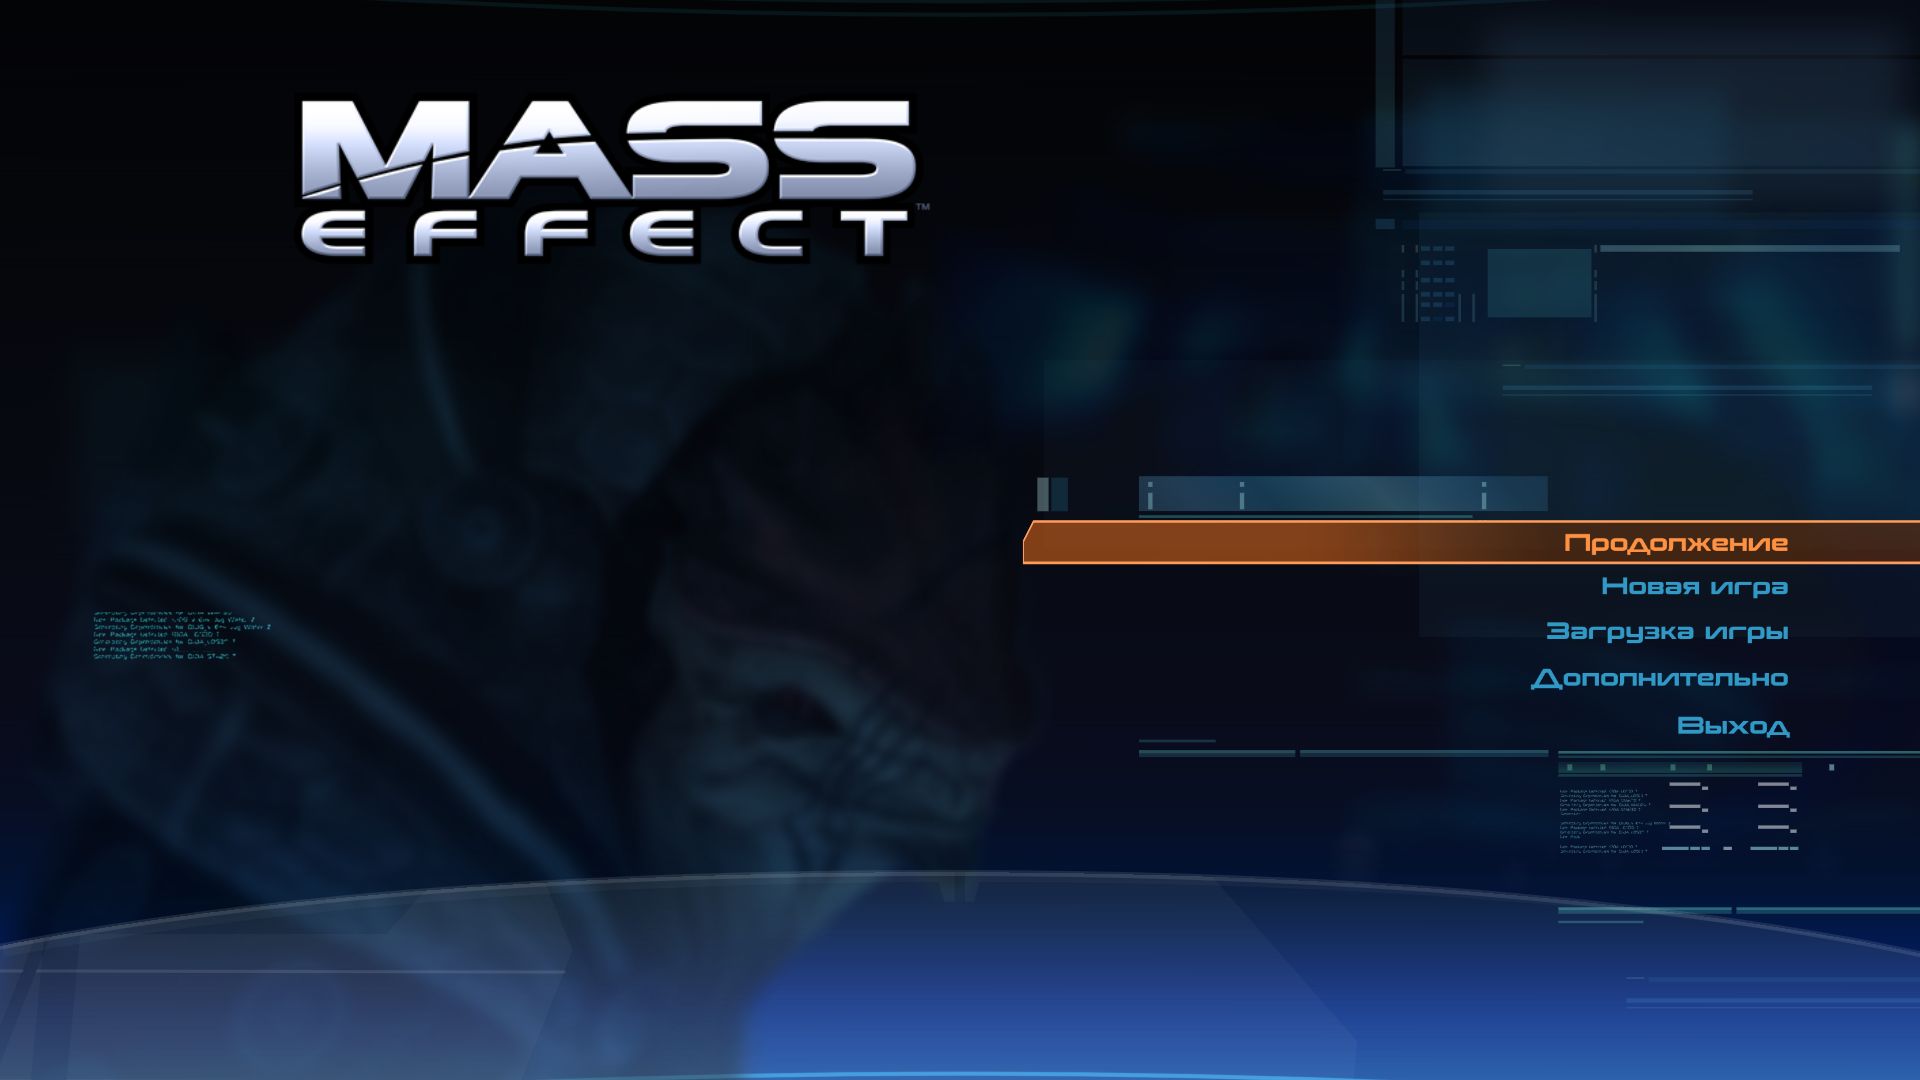 Mass Effect 2015 02 25 14 57 26 450